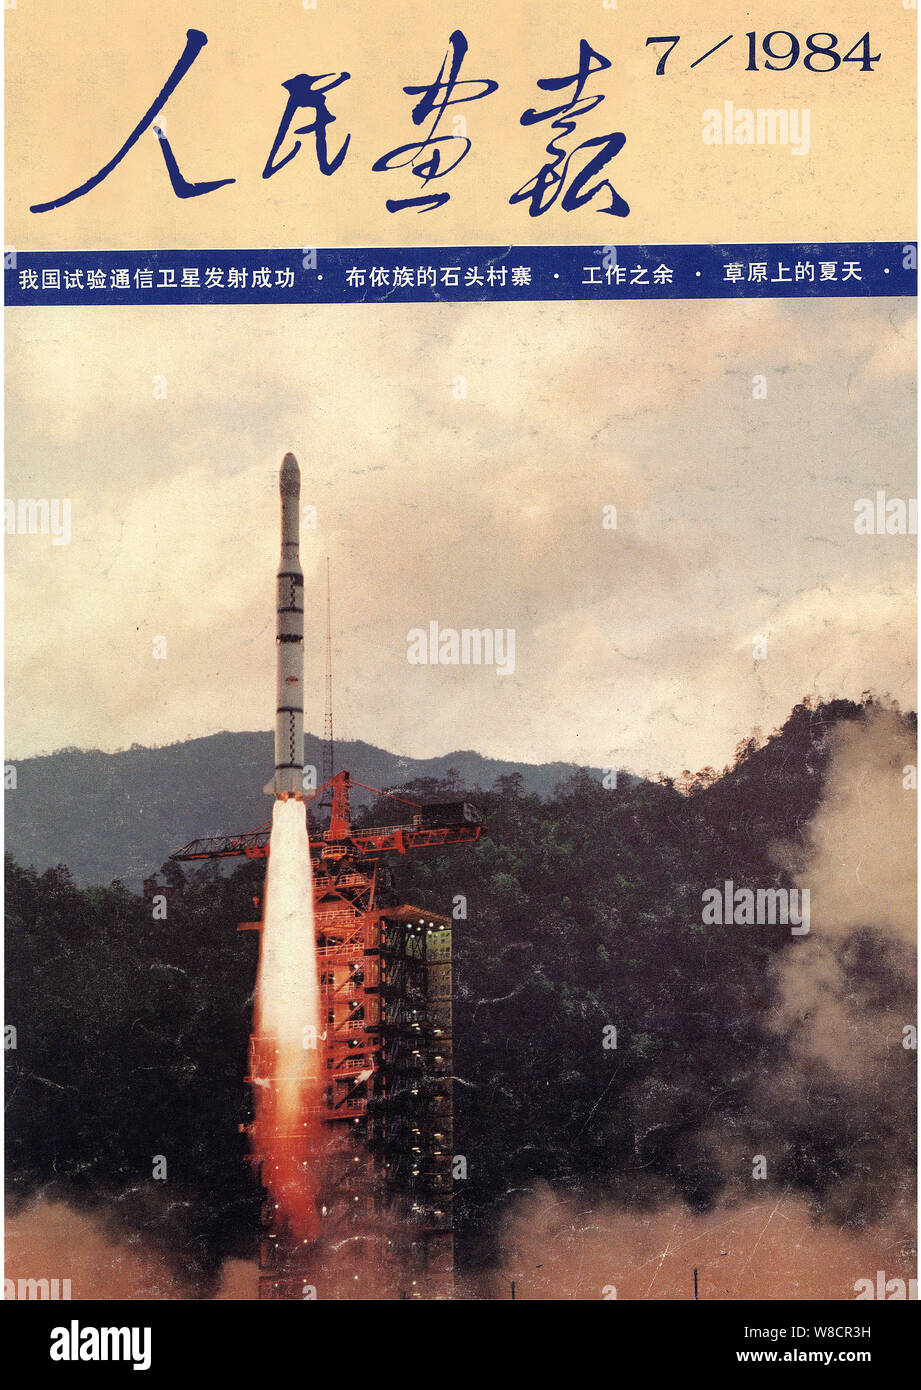 Diese Abdeckung der China Bildliche herausgegeben im Juli 1984 mit der Einführung eines experimentellen Kommunikation Satelliten. Stockfoto